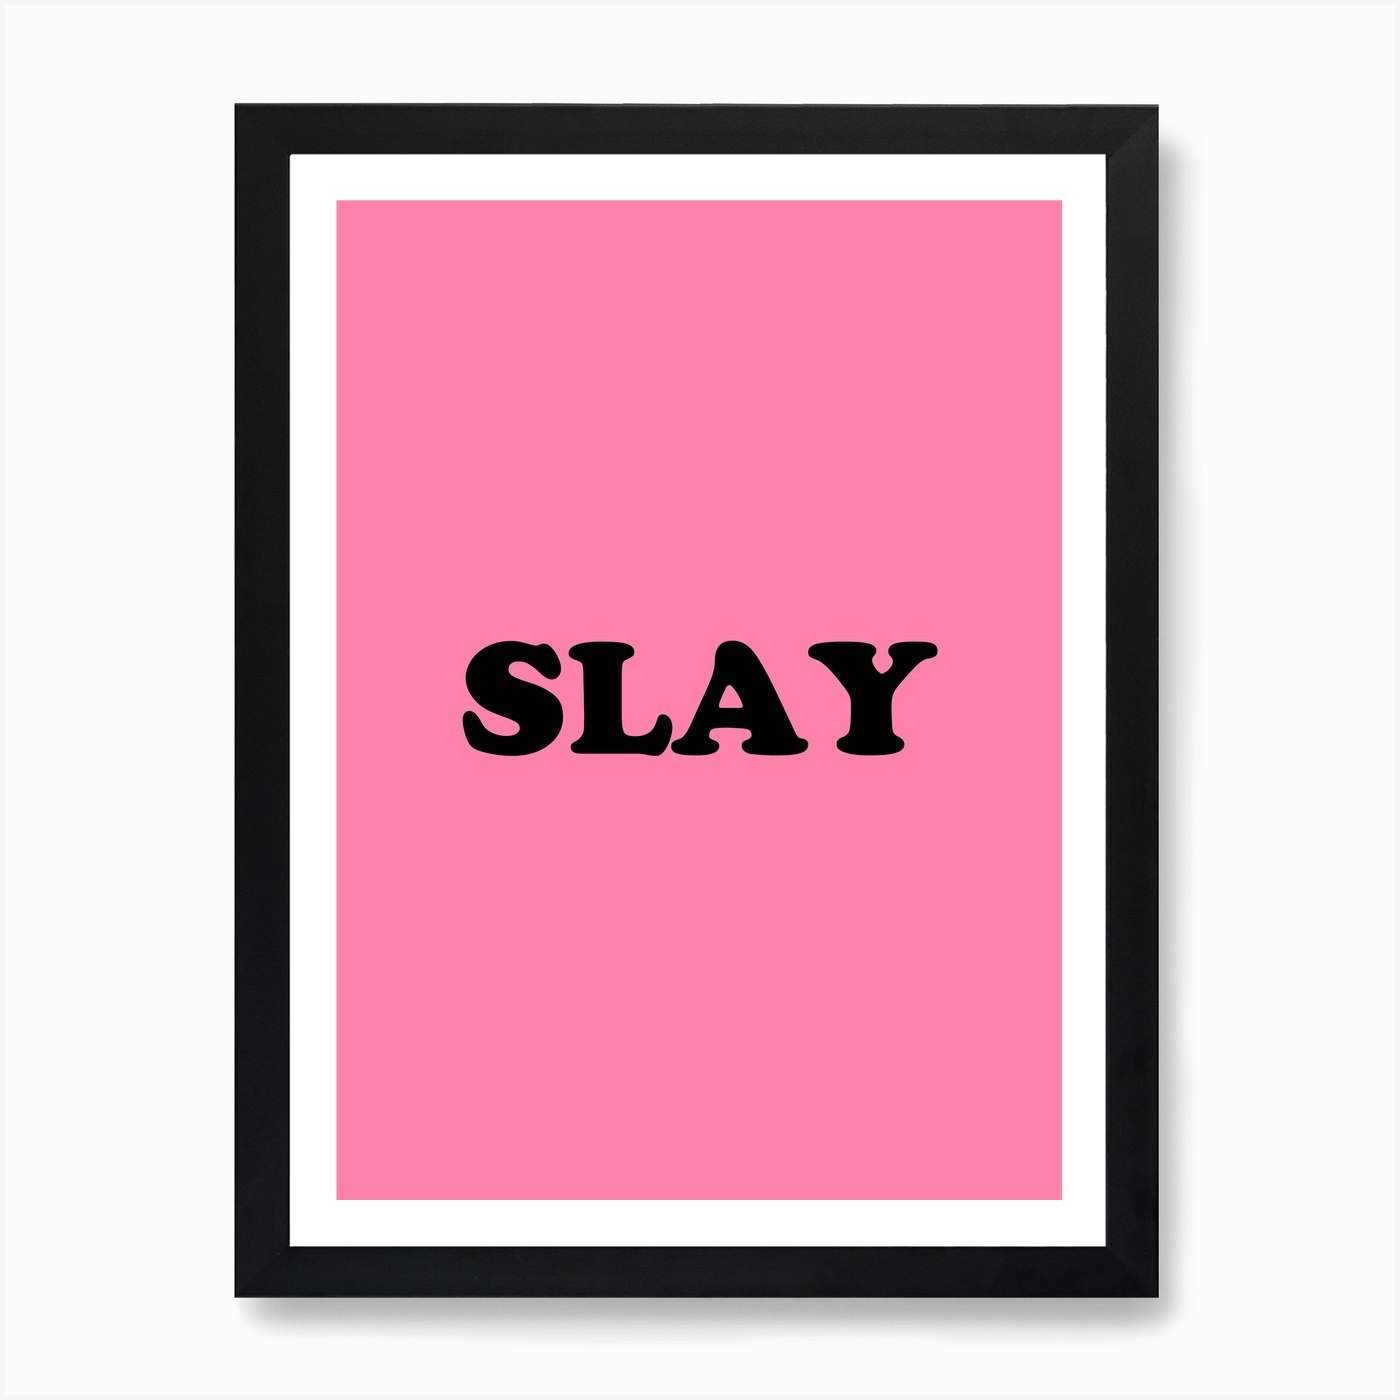 Slay Art Print by Mambo - Fy